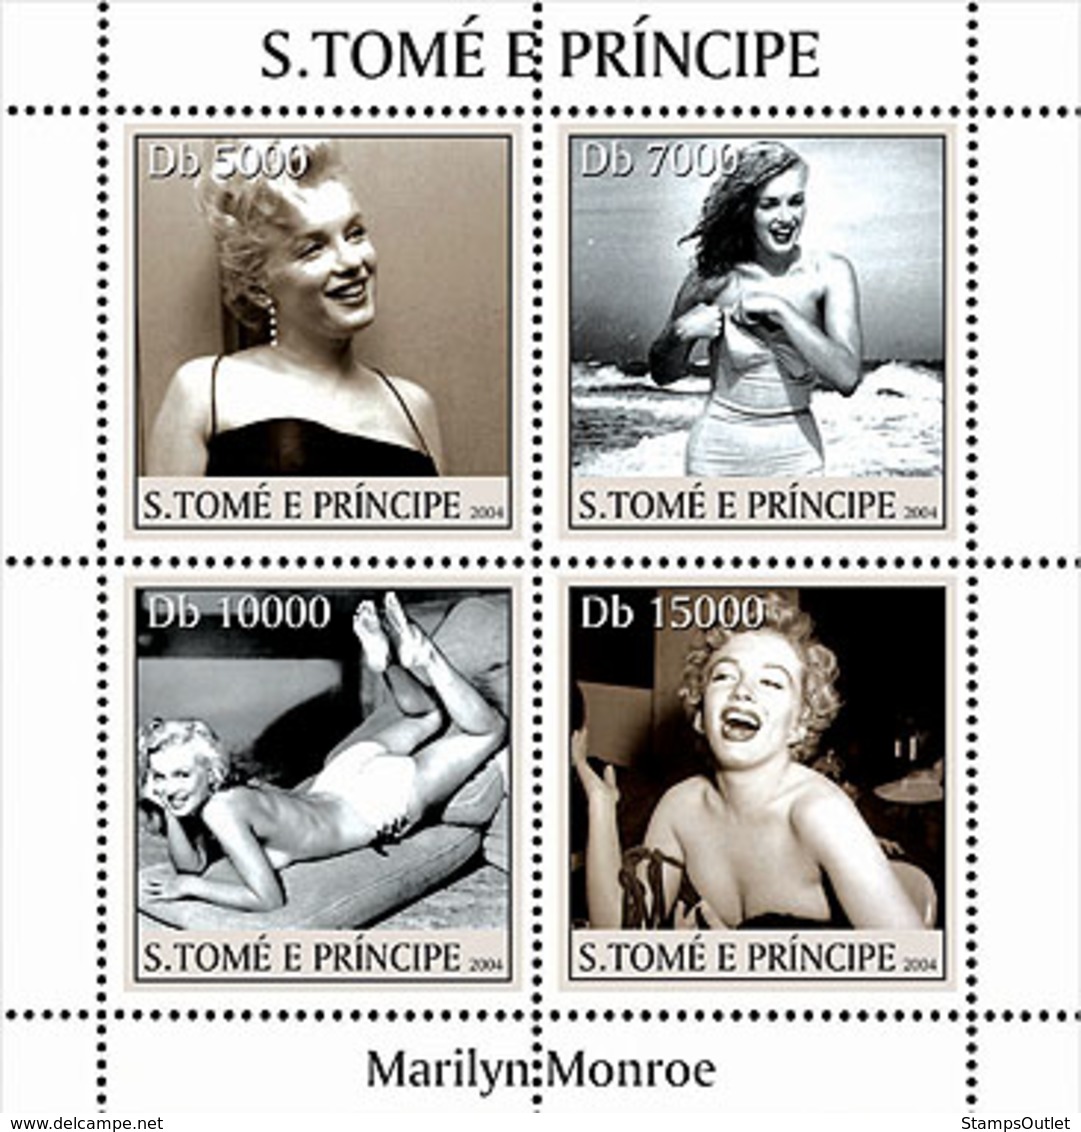 S. TOME & PRINCIPE 2004 - Marilyn Monroe 4v - YT 1938-1941,  Mi 2649-2652 - Sao Tome And Principe